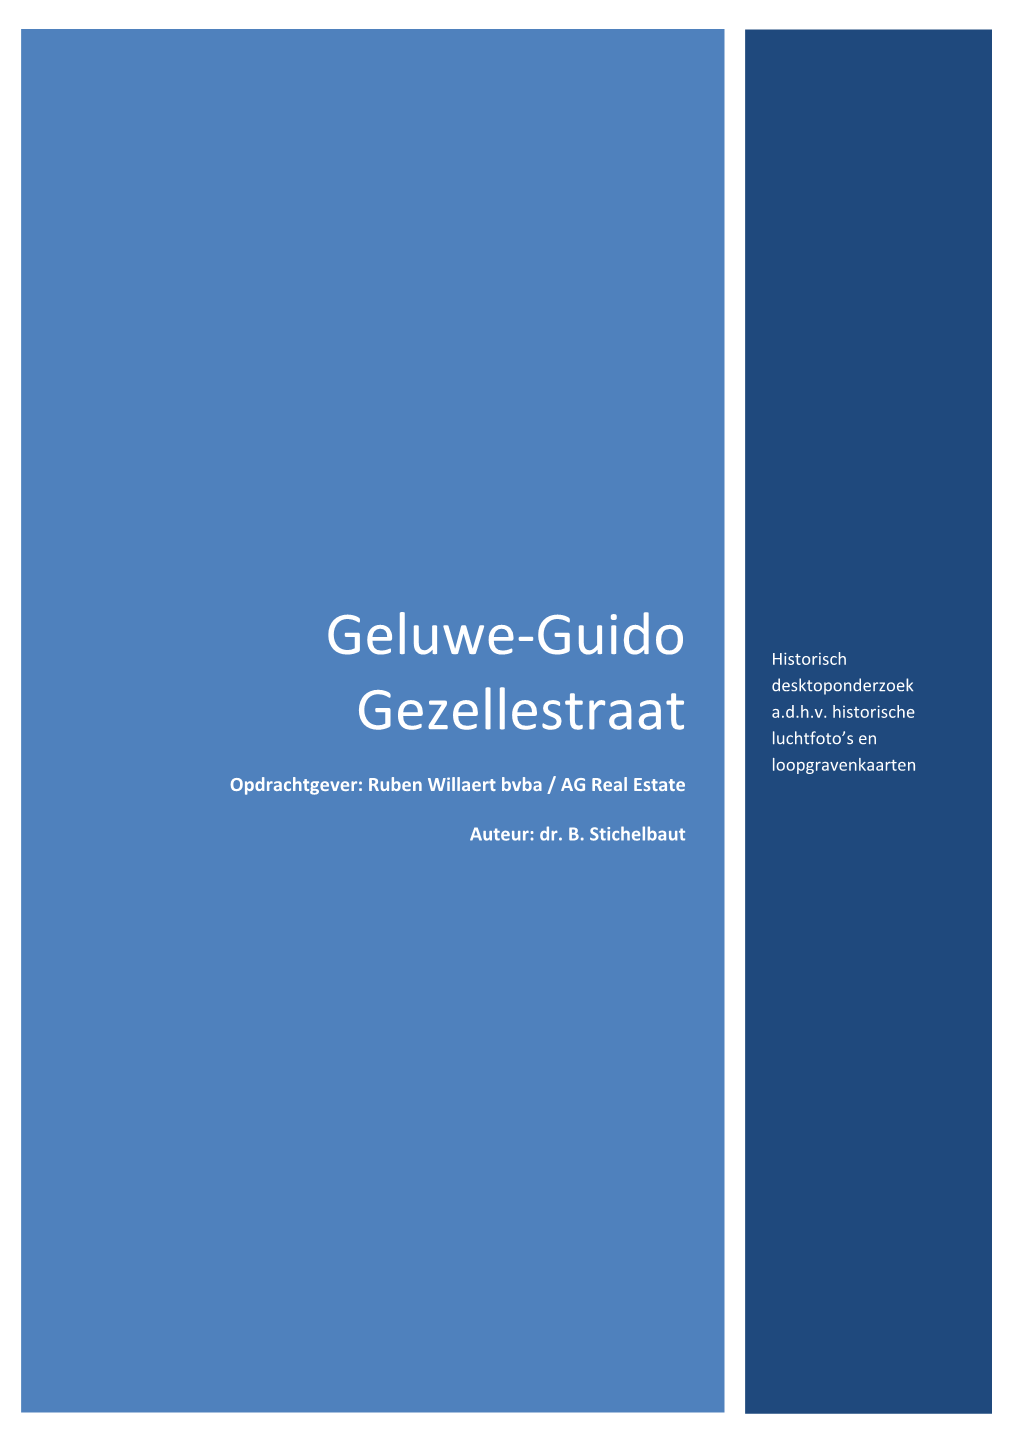 Geluwe-Guido Gezellestraat: Historisch Desktoponderzoek A.D.H.V